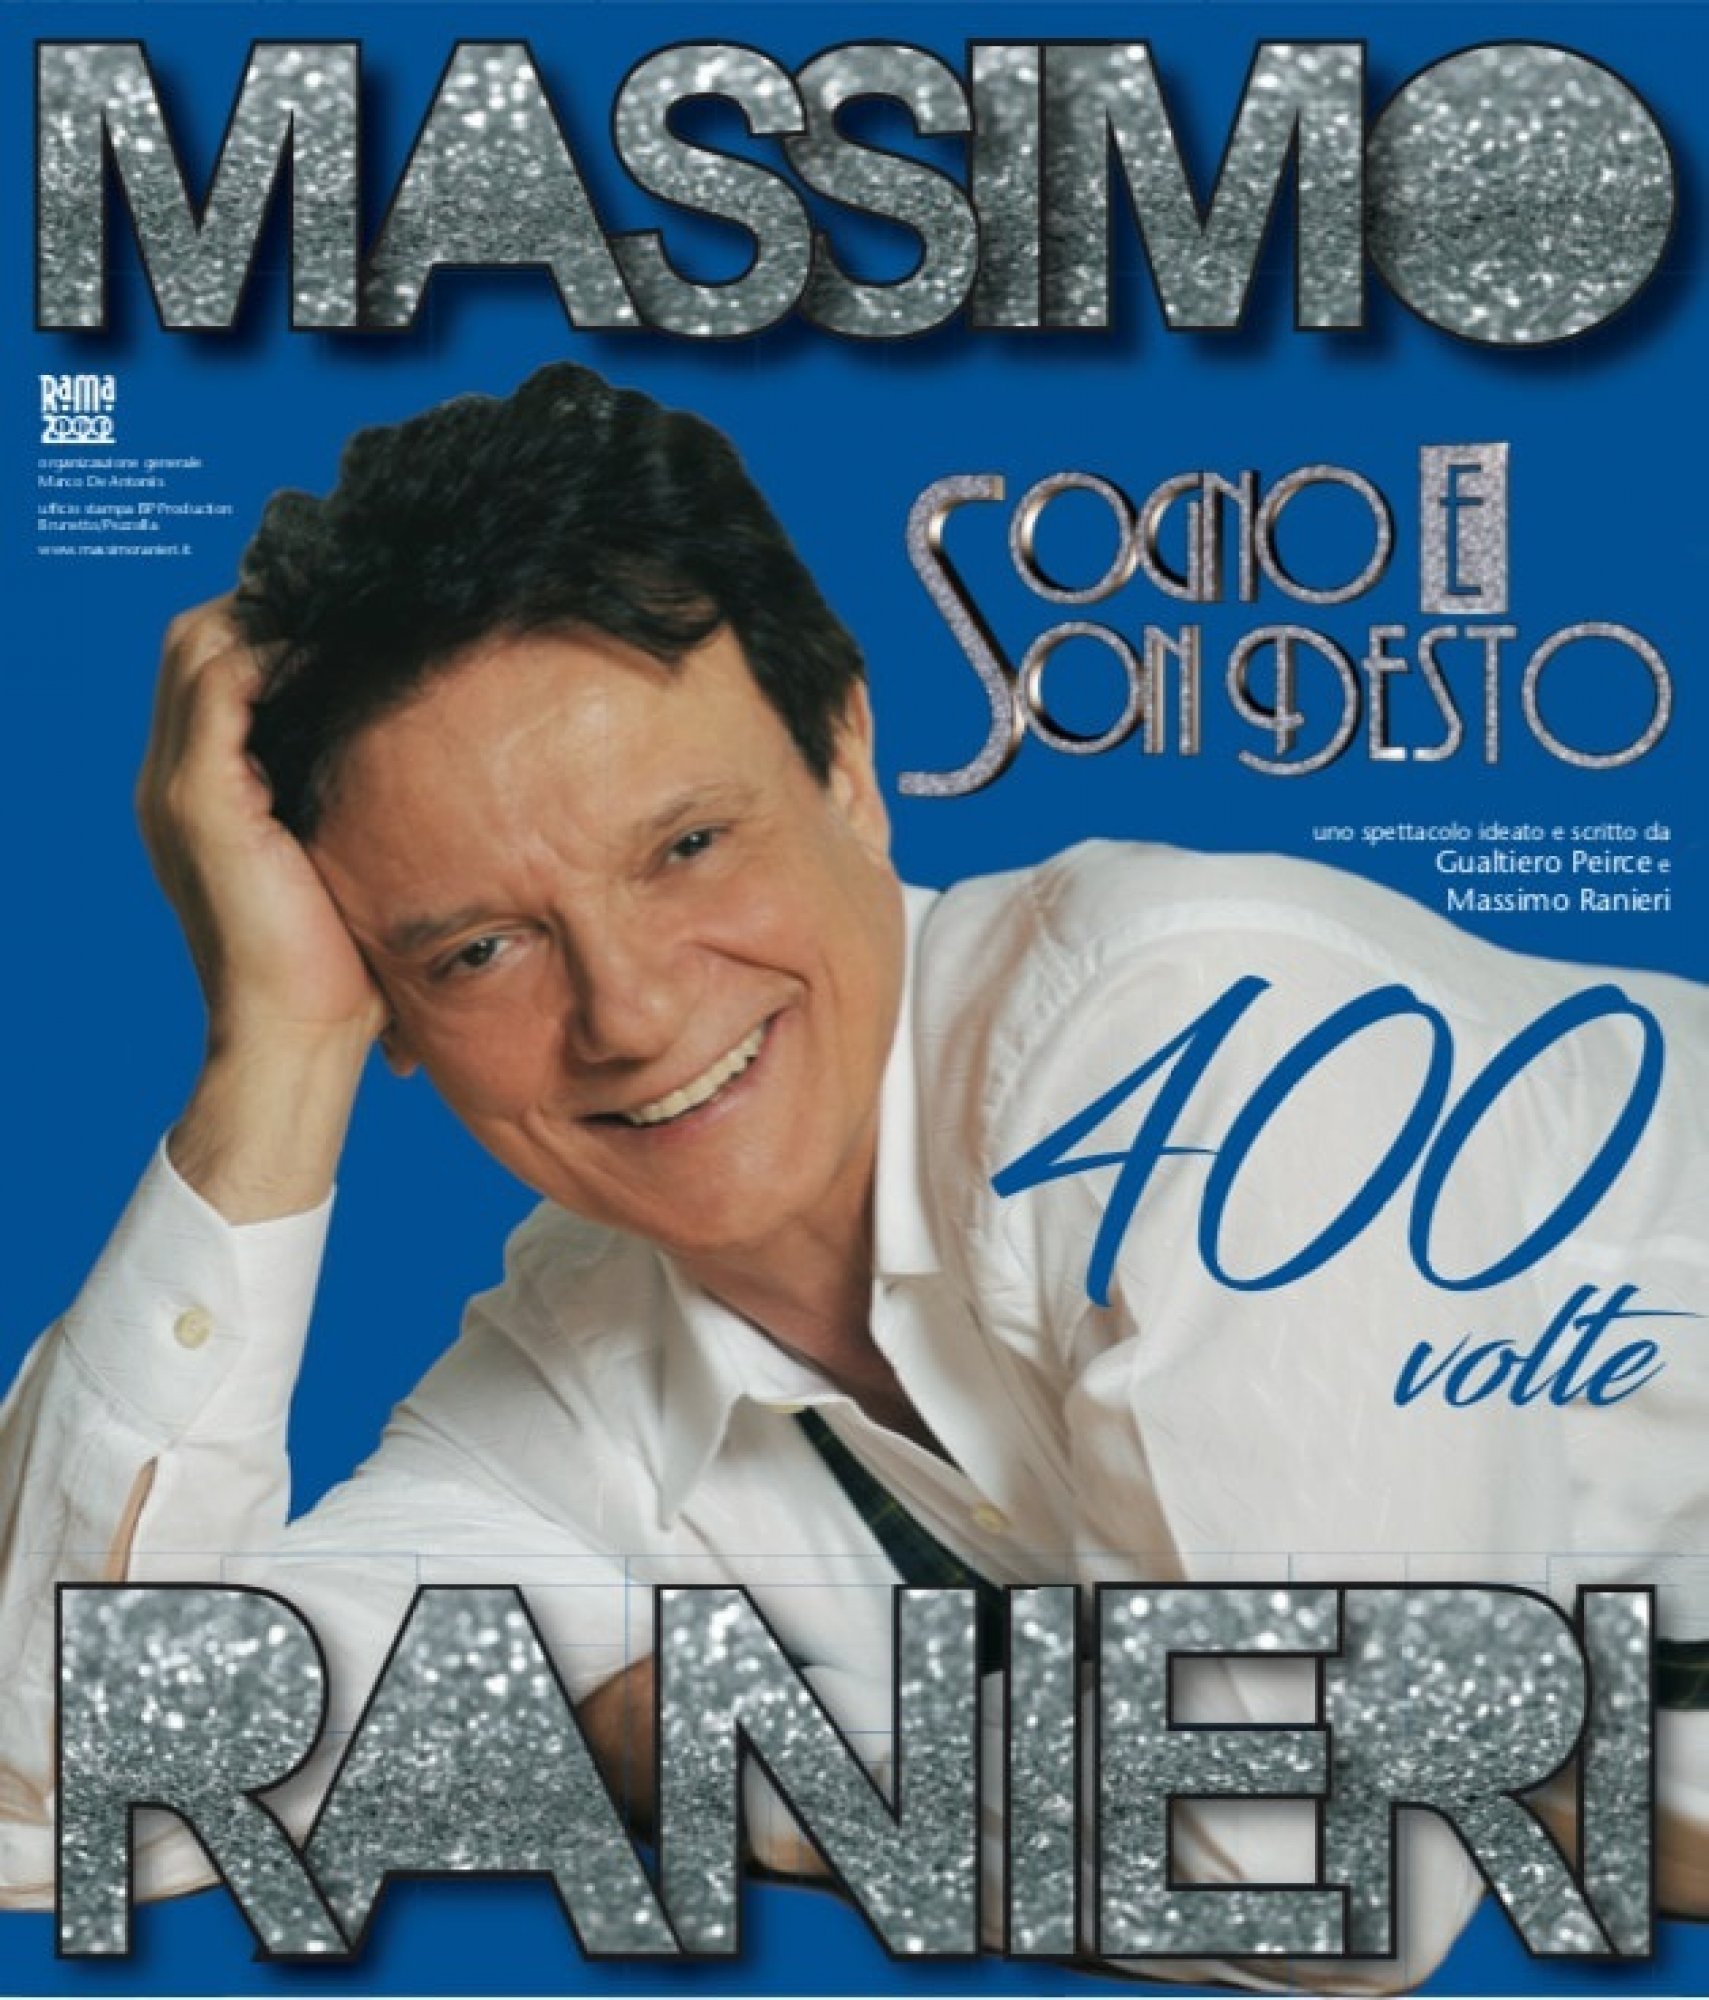 Massimo Ranieri - Sogno e son desto 400 volte